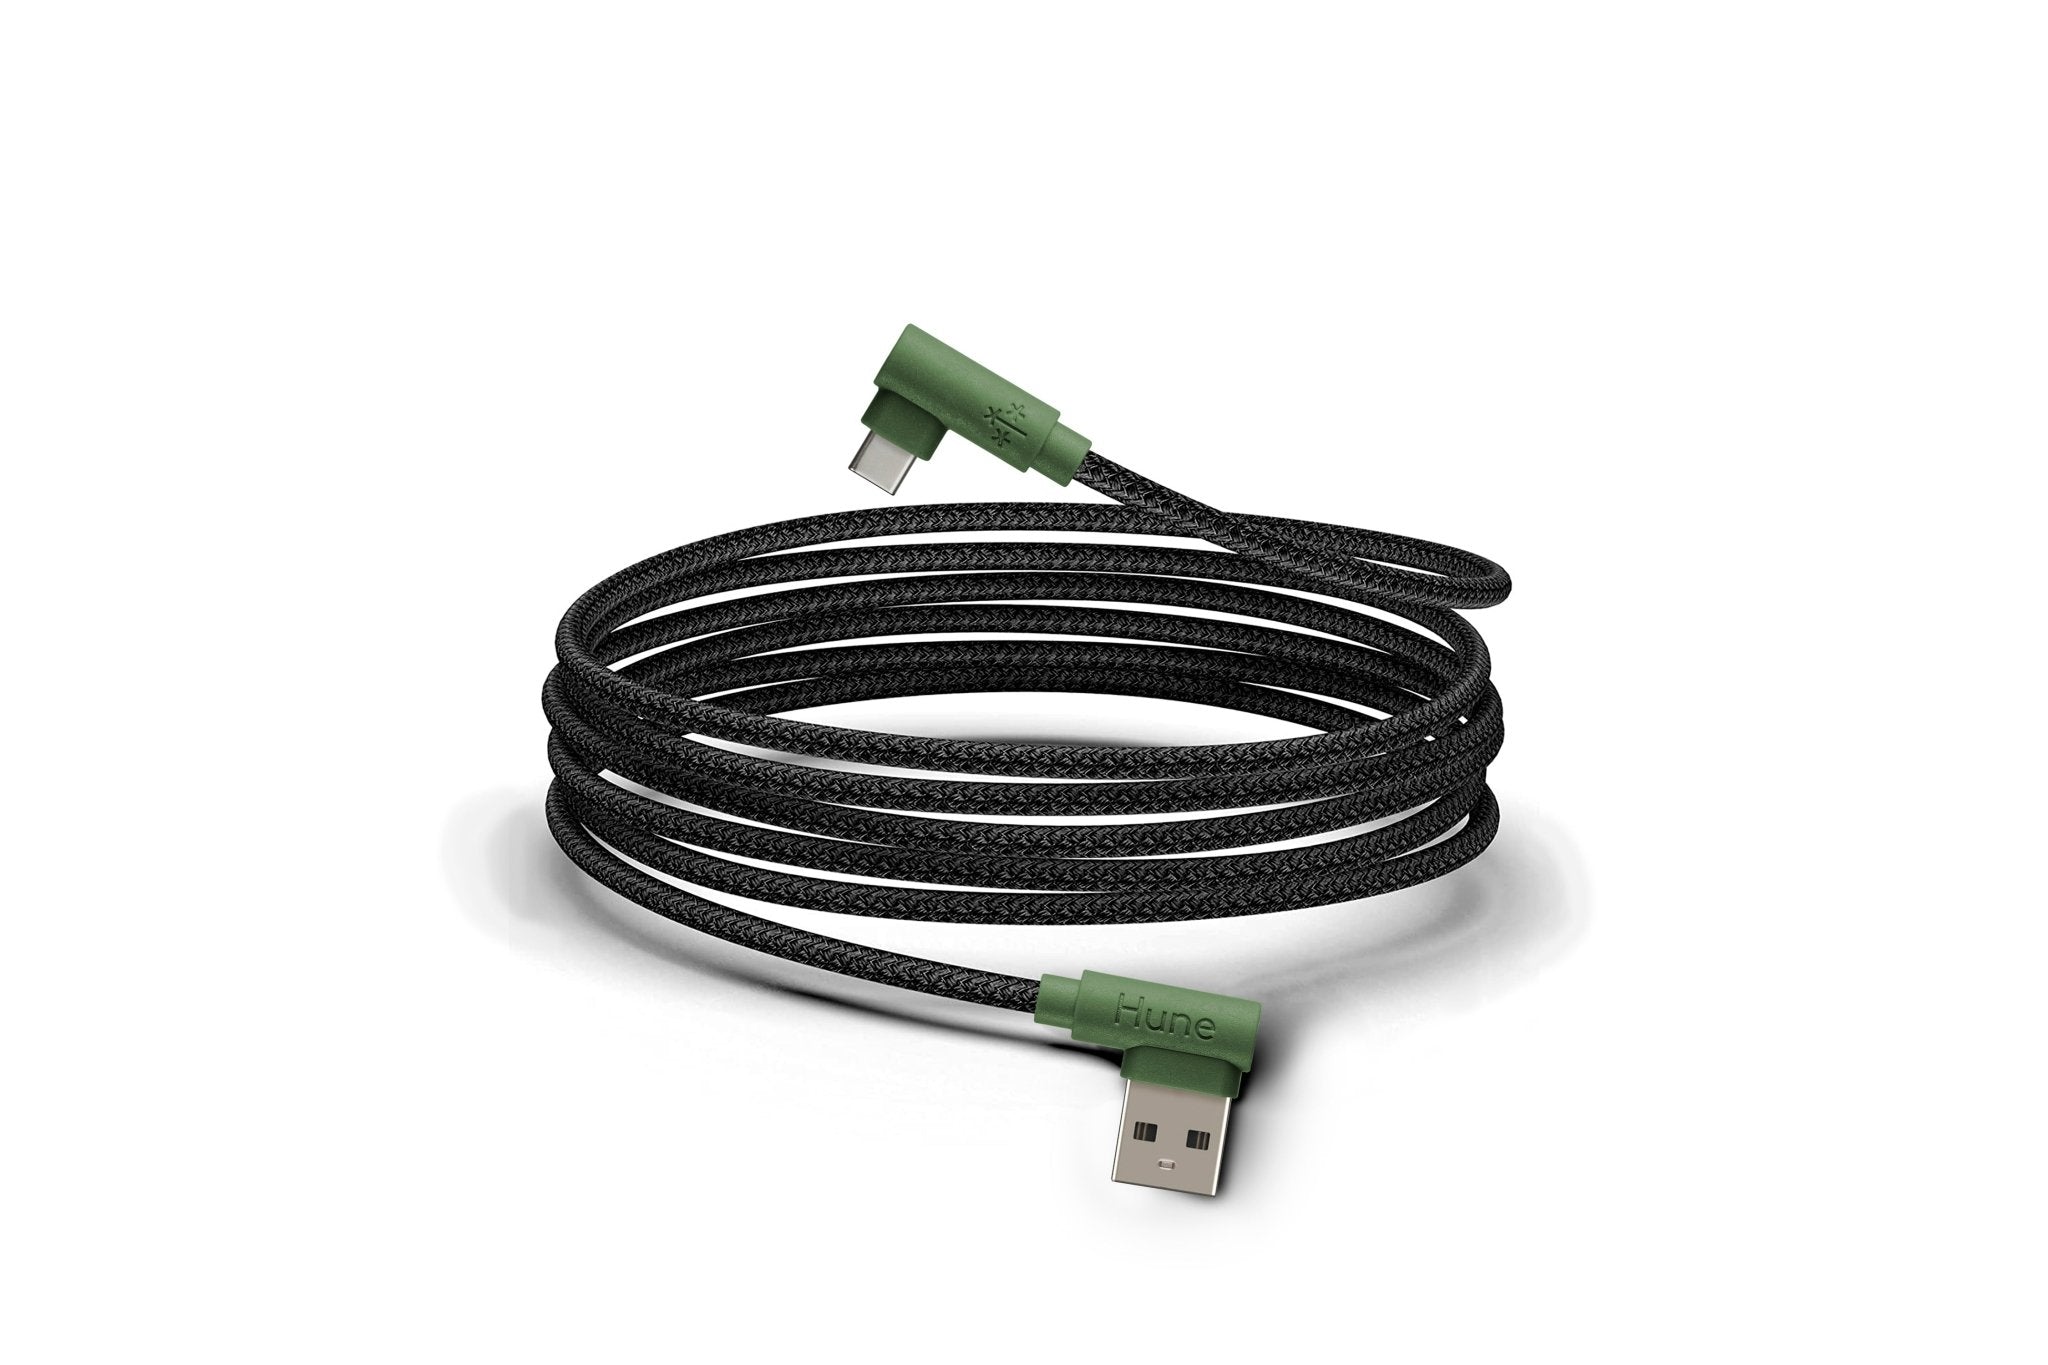 Cable USB A a Tipo C Carga Rápida 1.2m Sustentable –